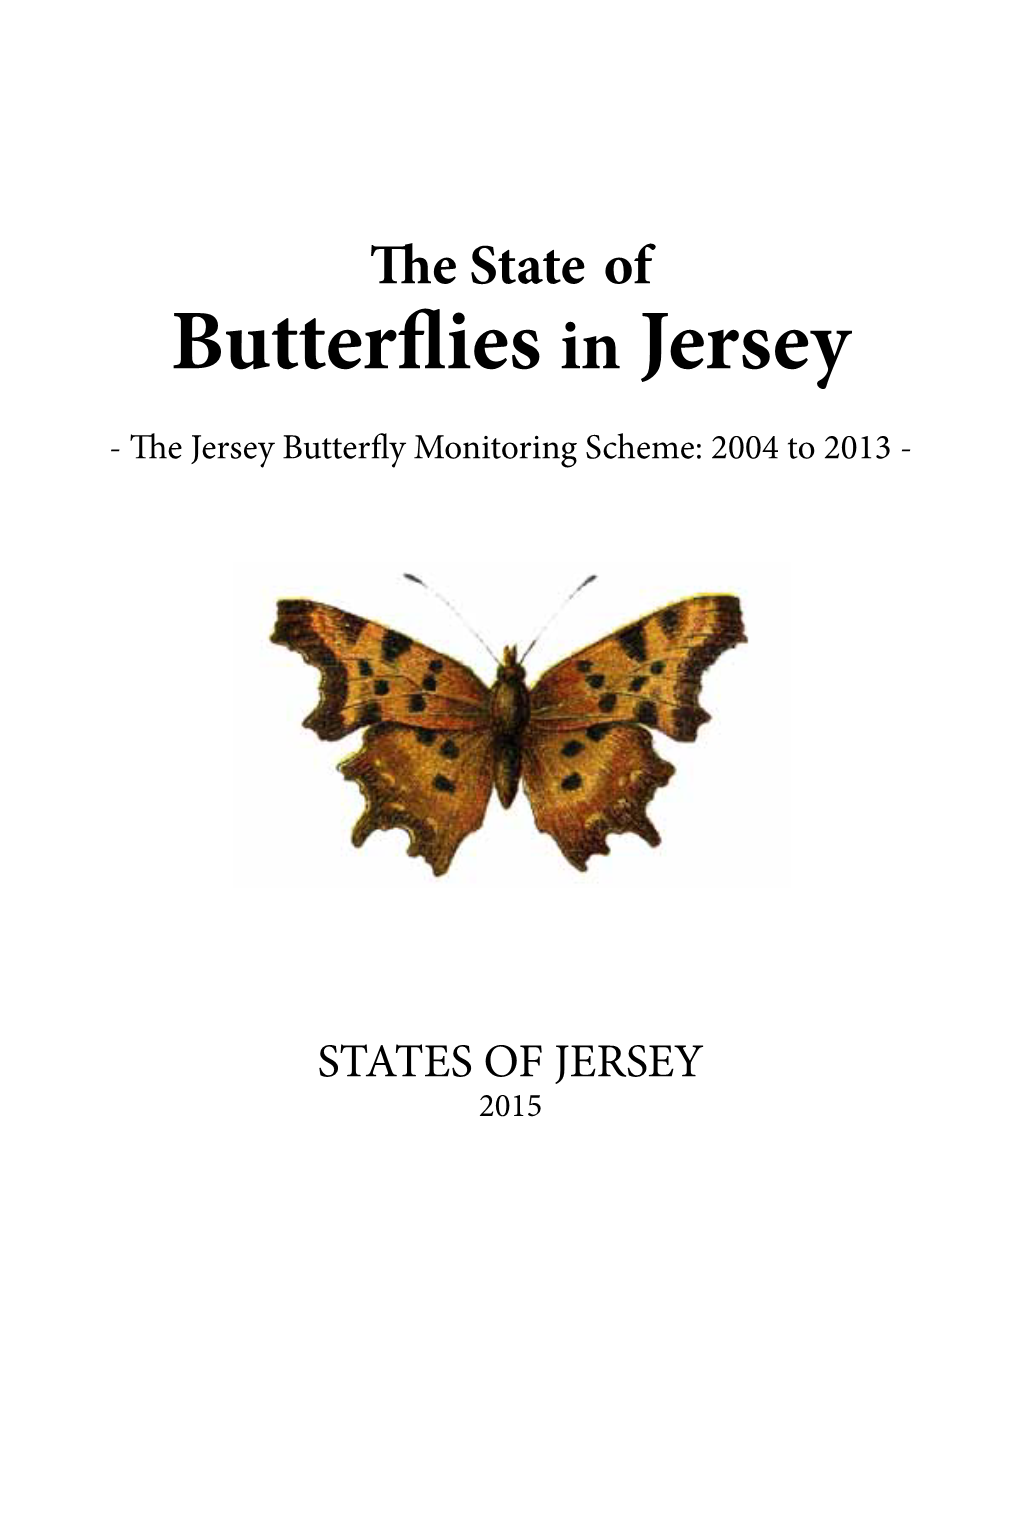 Butterflies in Jersey